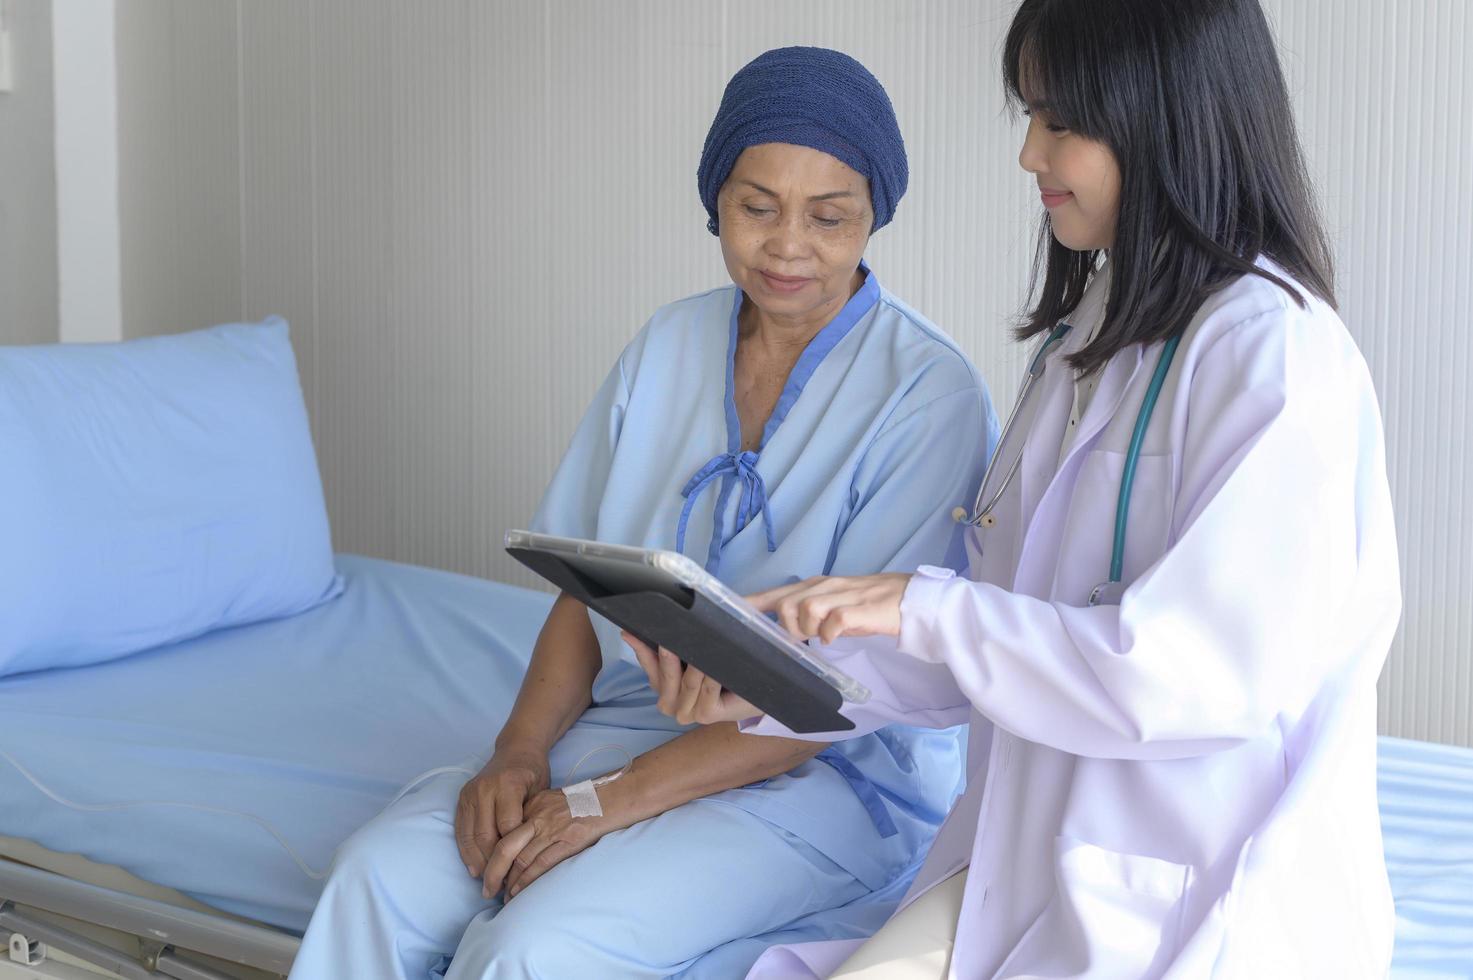 femme patiente atteinte d'un cancer portant un foulard sur la tête après consultation de chimiothérapie et visite d'un médecin à l'hôpital. photo